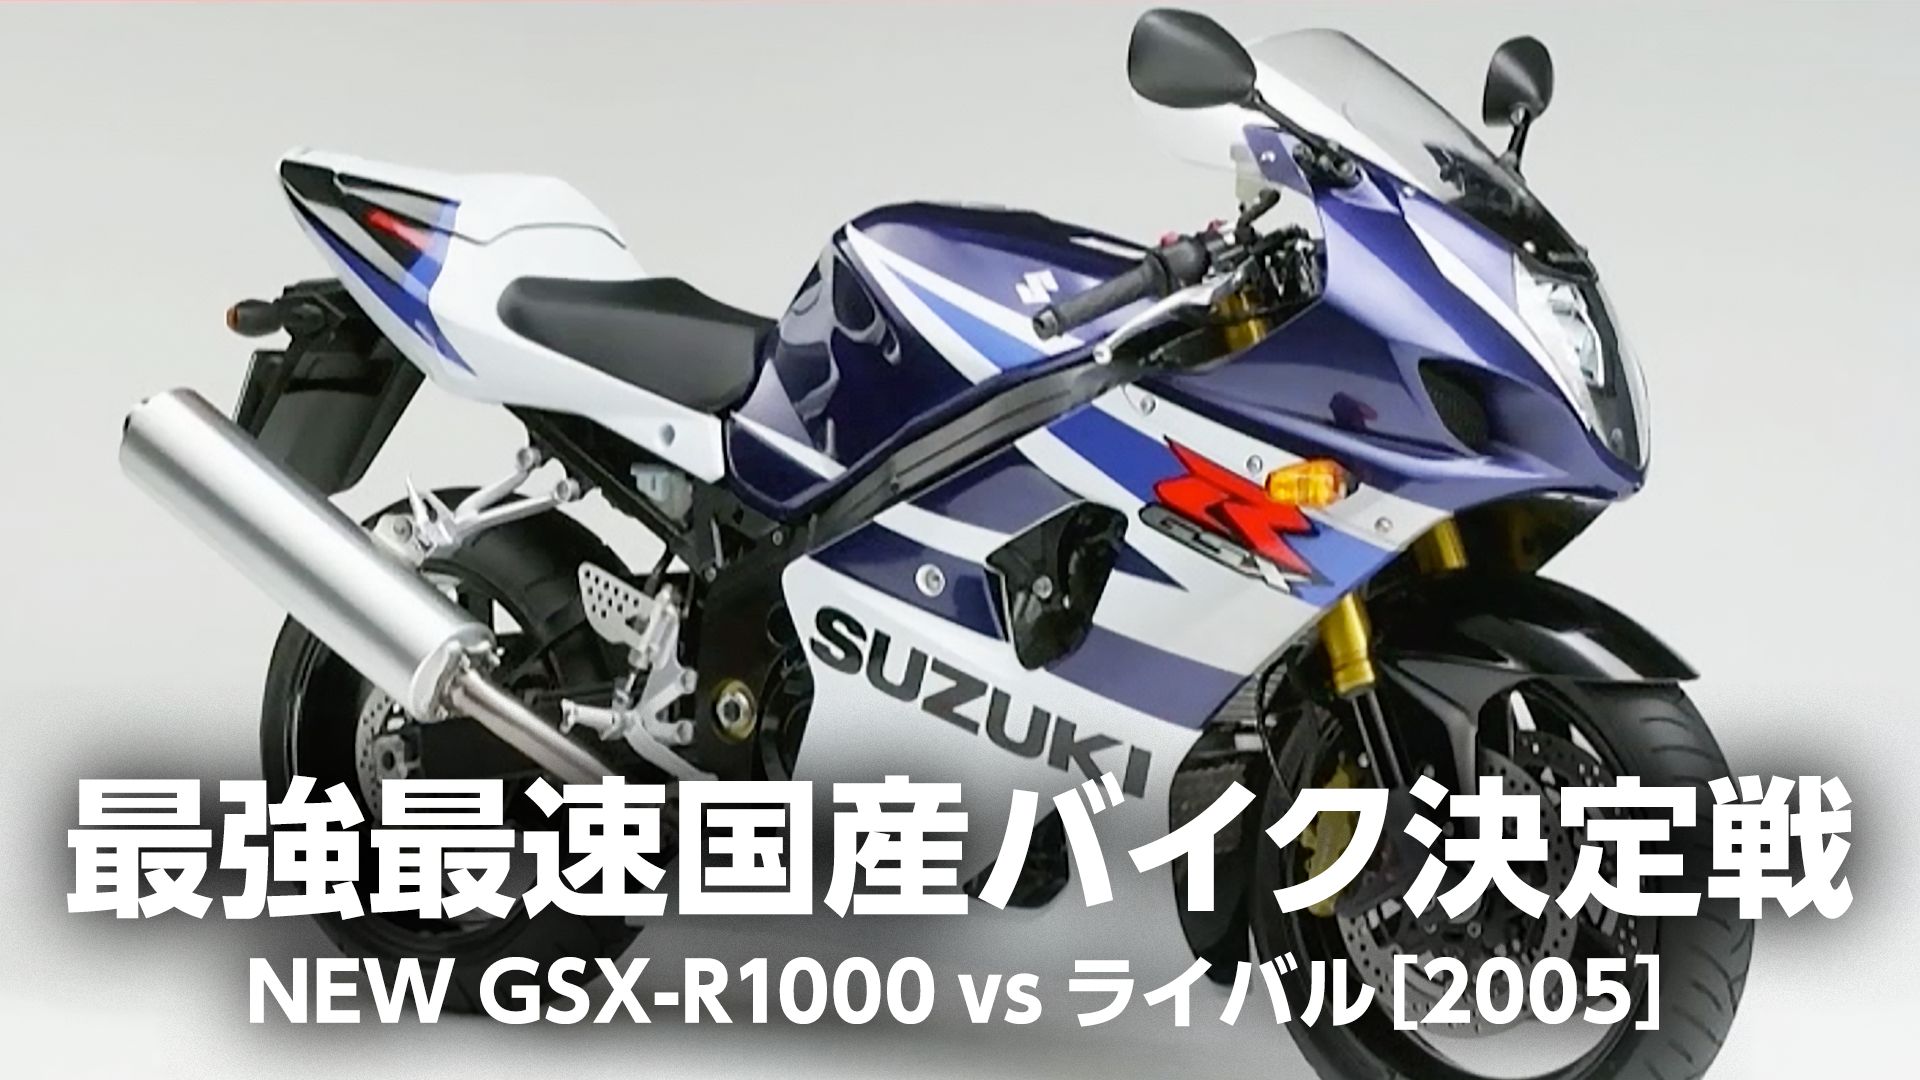 最強最速国産バイク決定戦:NEW GSX-R1000 vs ライバル[2005]